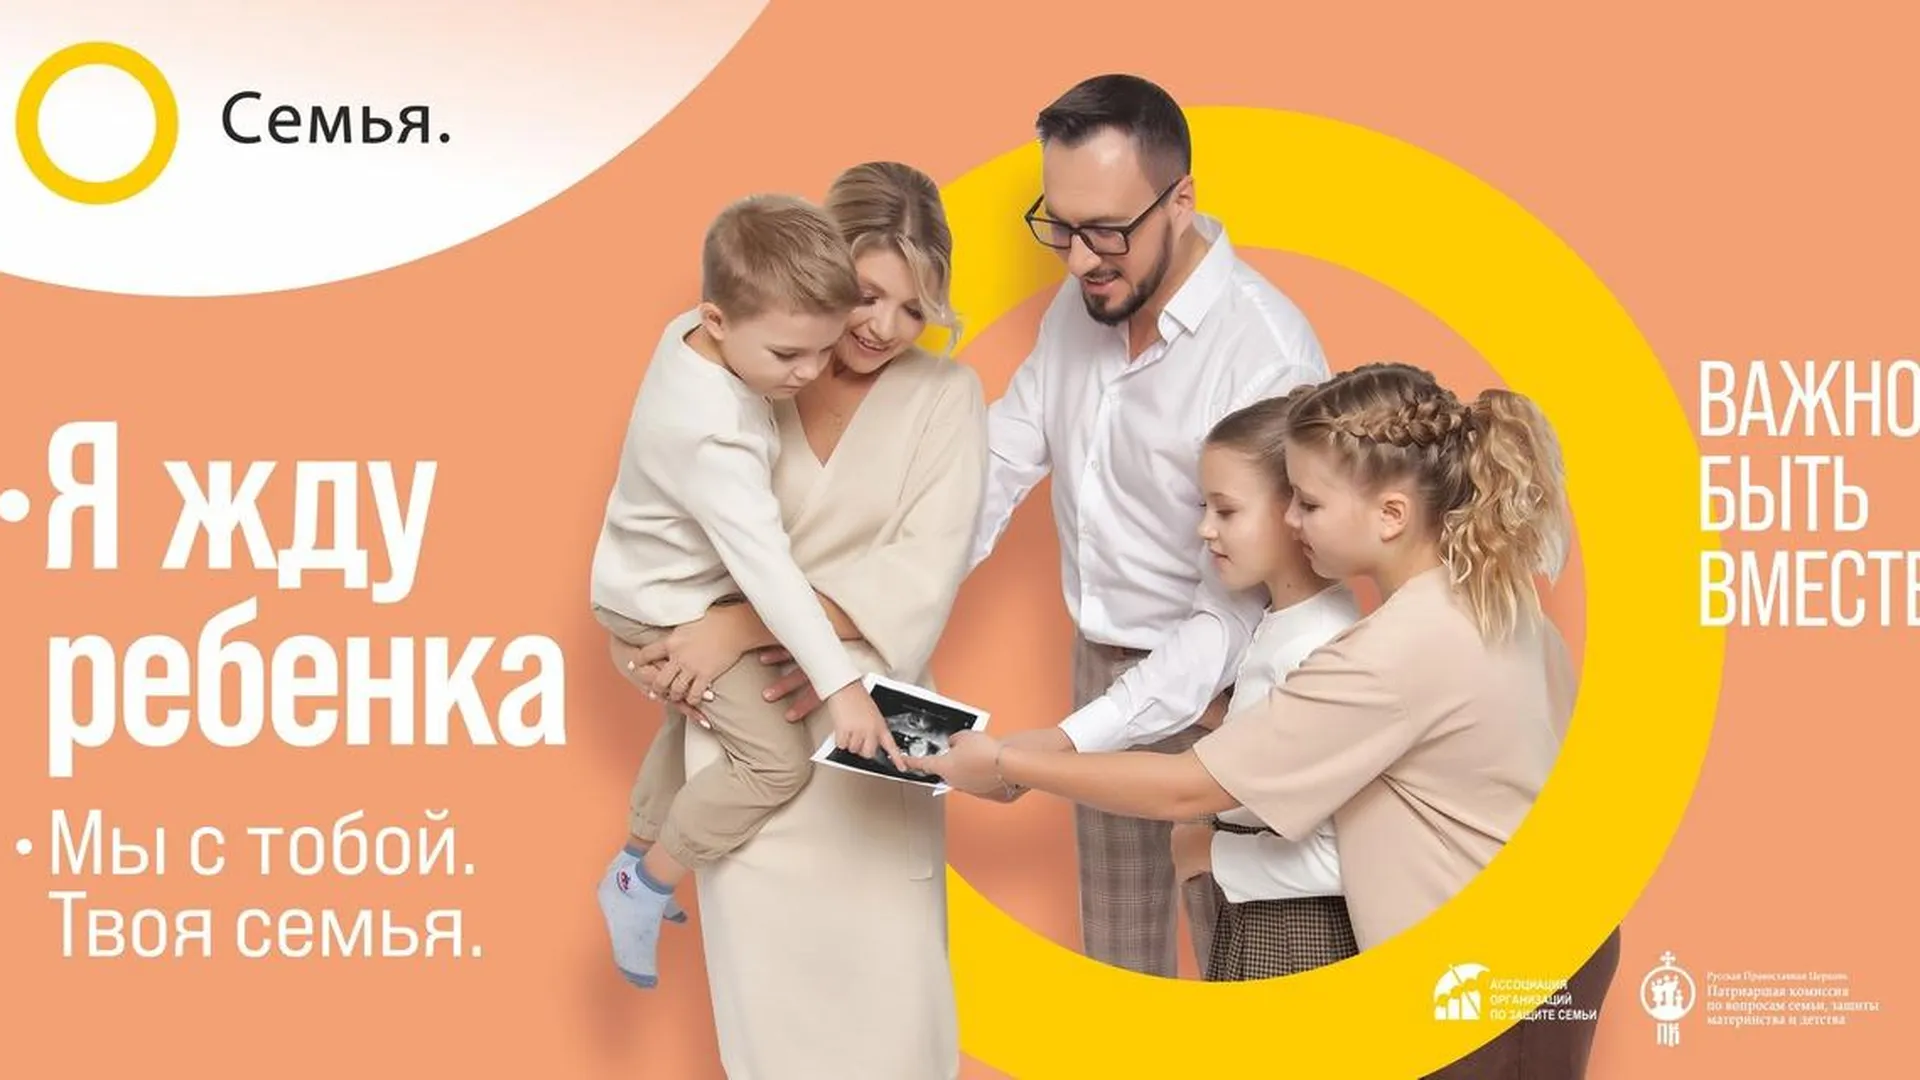 Страница в "ВКонтакте" Ассоциации организаций по защите семьи